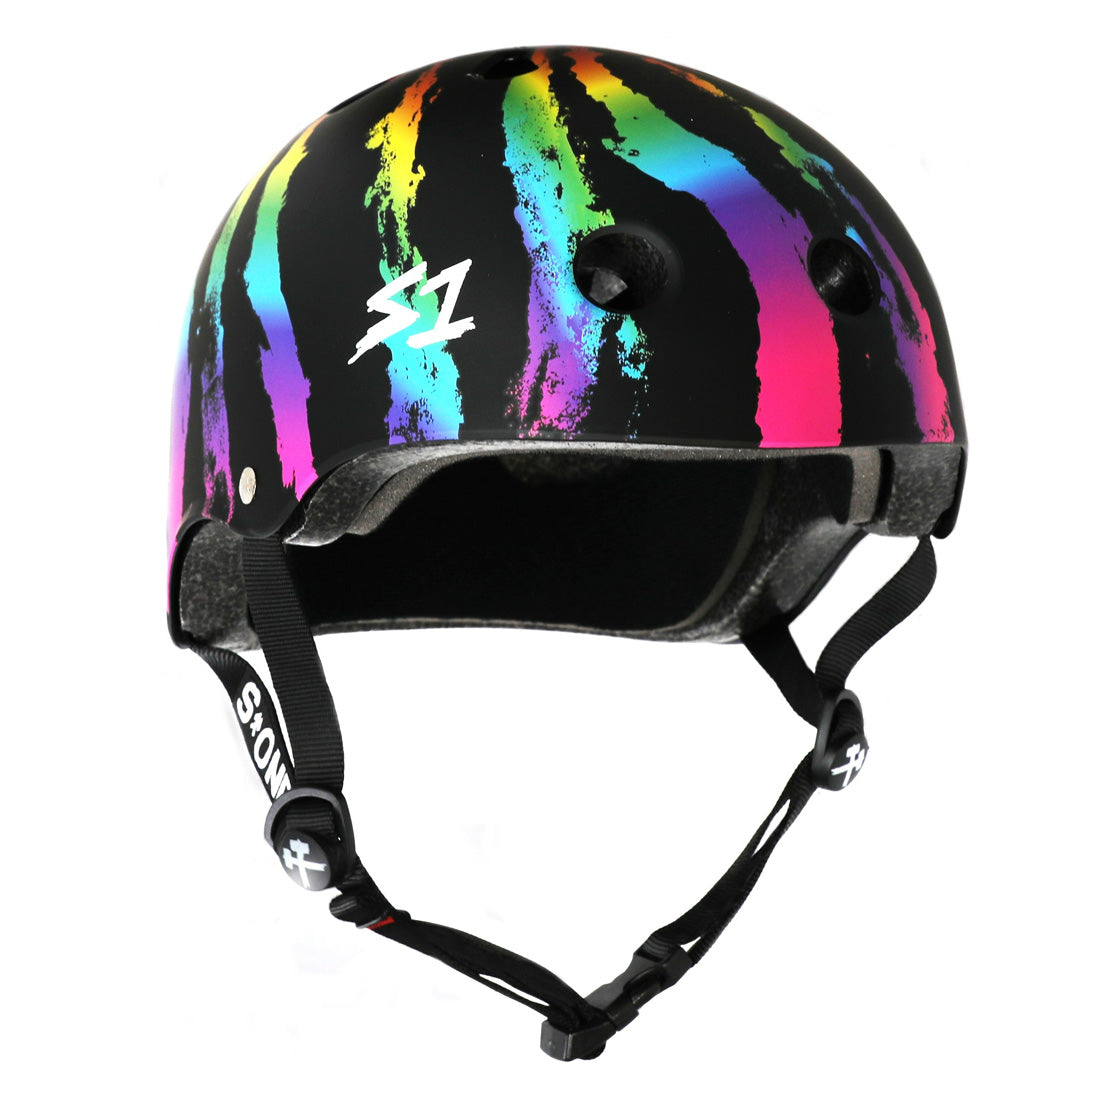 S-One Lifer Helmet - Rainbow Swirl Helmets